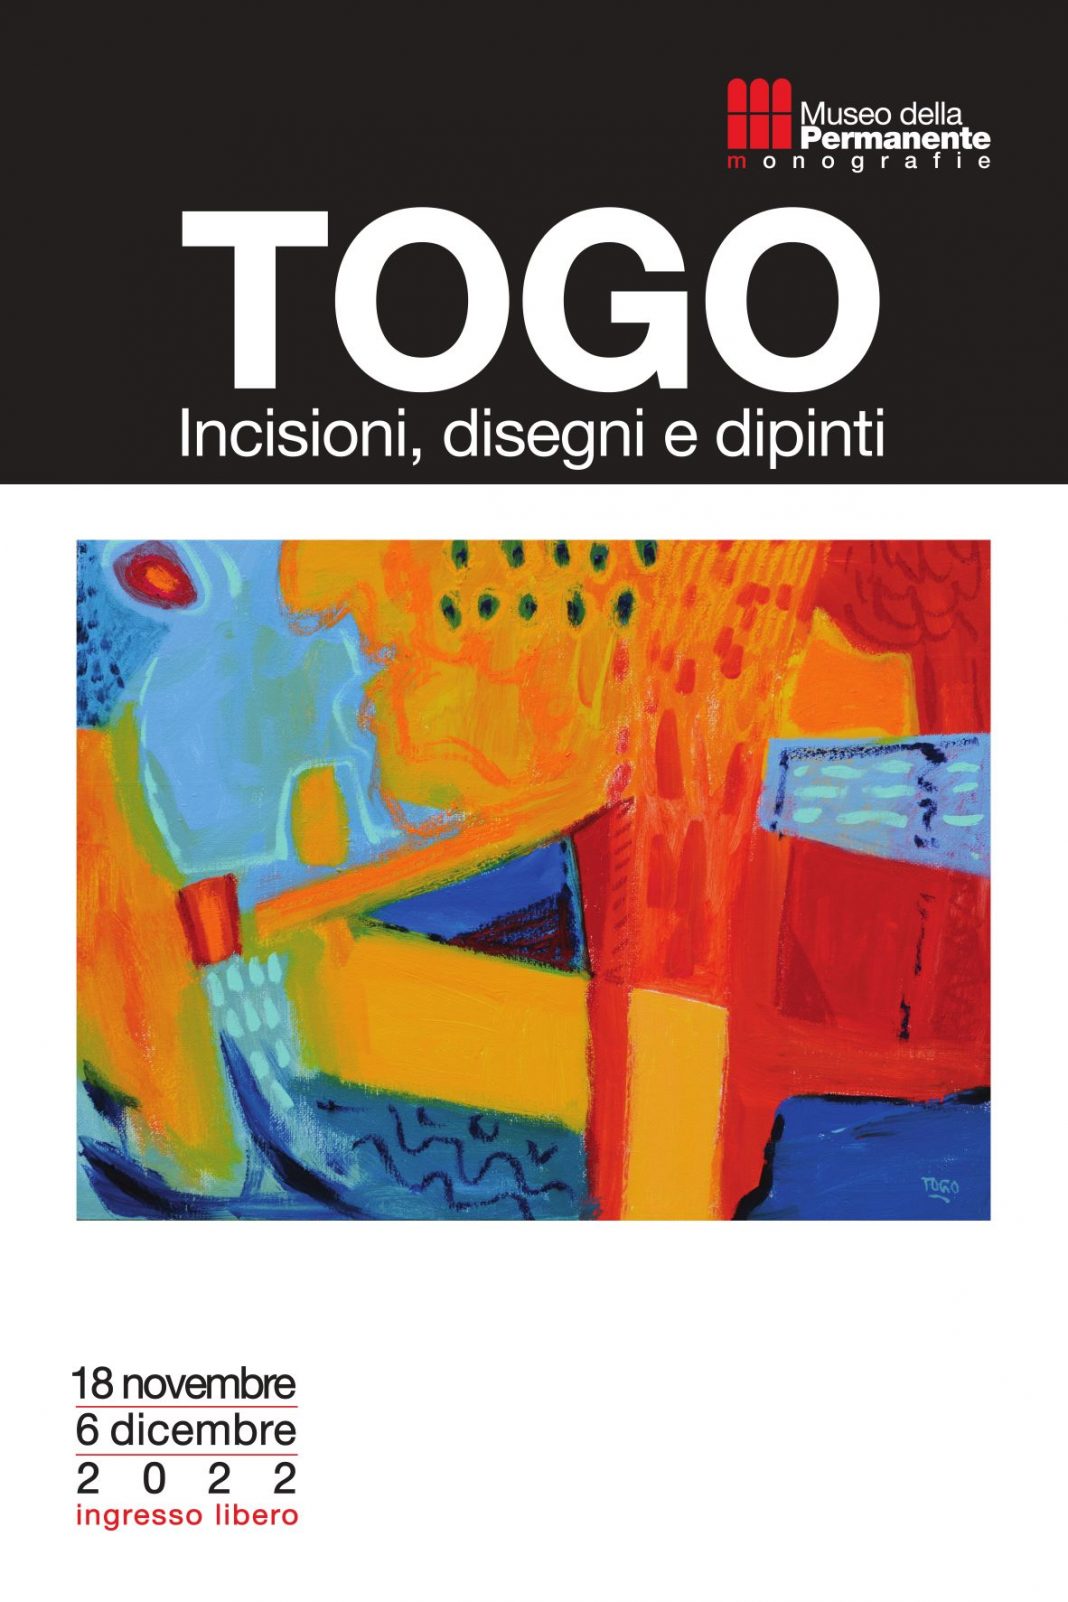 TOGO. Incisioni, disegni, dipintihttps://www.exibart.com/repository/media/formidable/11/img/70a/TOGO-Incisioni-disegni-e-dipinti_mostra-Museo-della-Permanente-1068x1602.jpeg